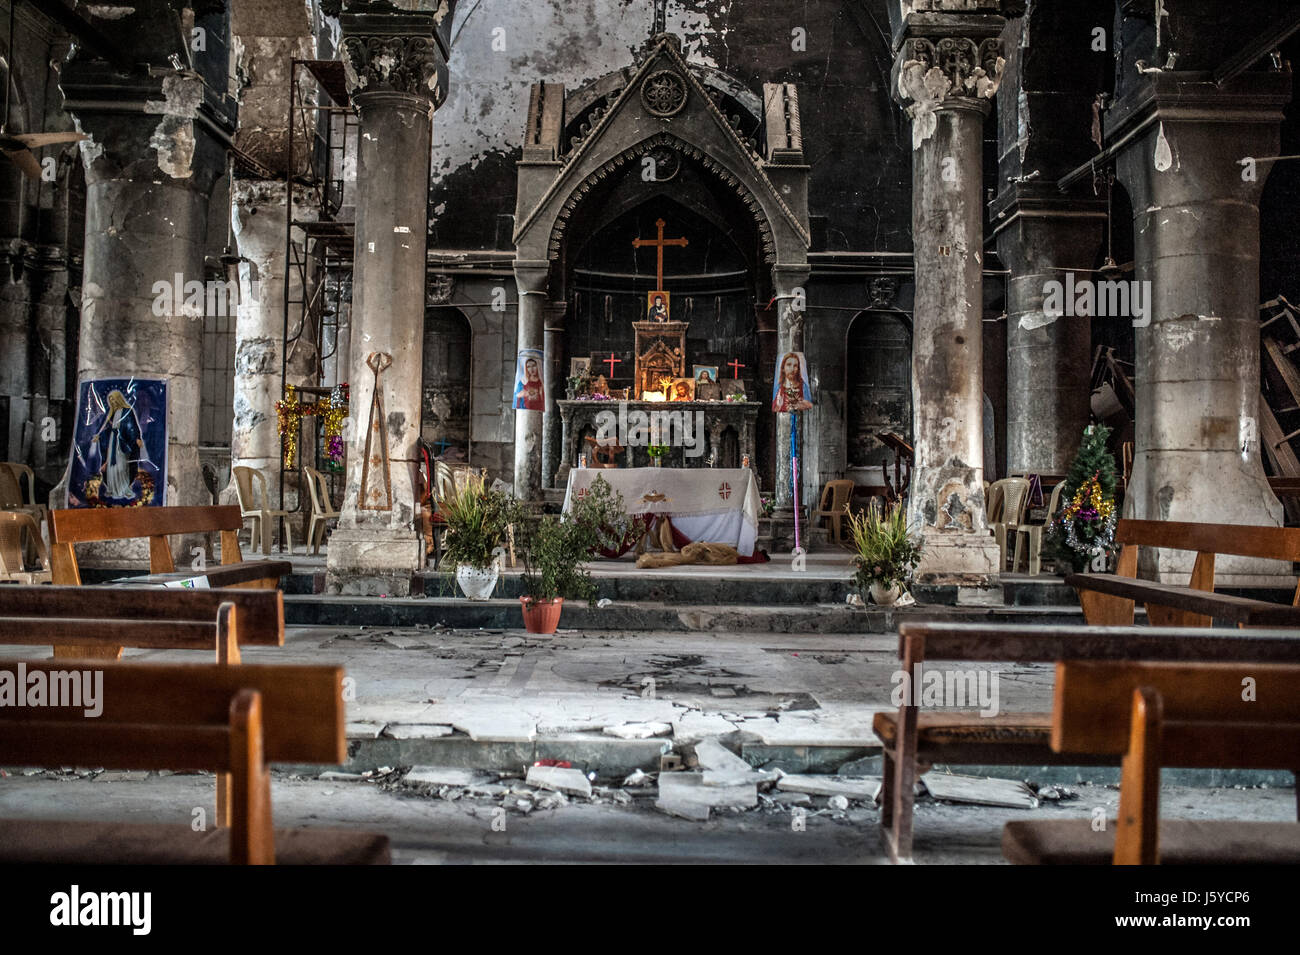 Die Unbefleckte Empfängnis-Kirche in Qaraqosh (Hamdaniya) Irak zerstört und geplündert von ISIS, nachdem sie die Stadt im Jahr 2014 übernahm. Stockfoto